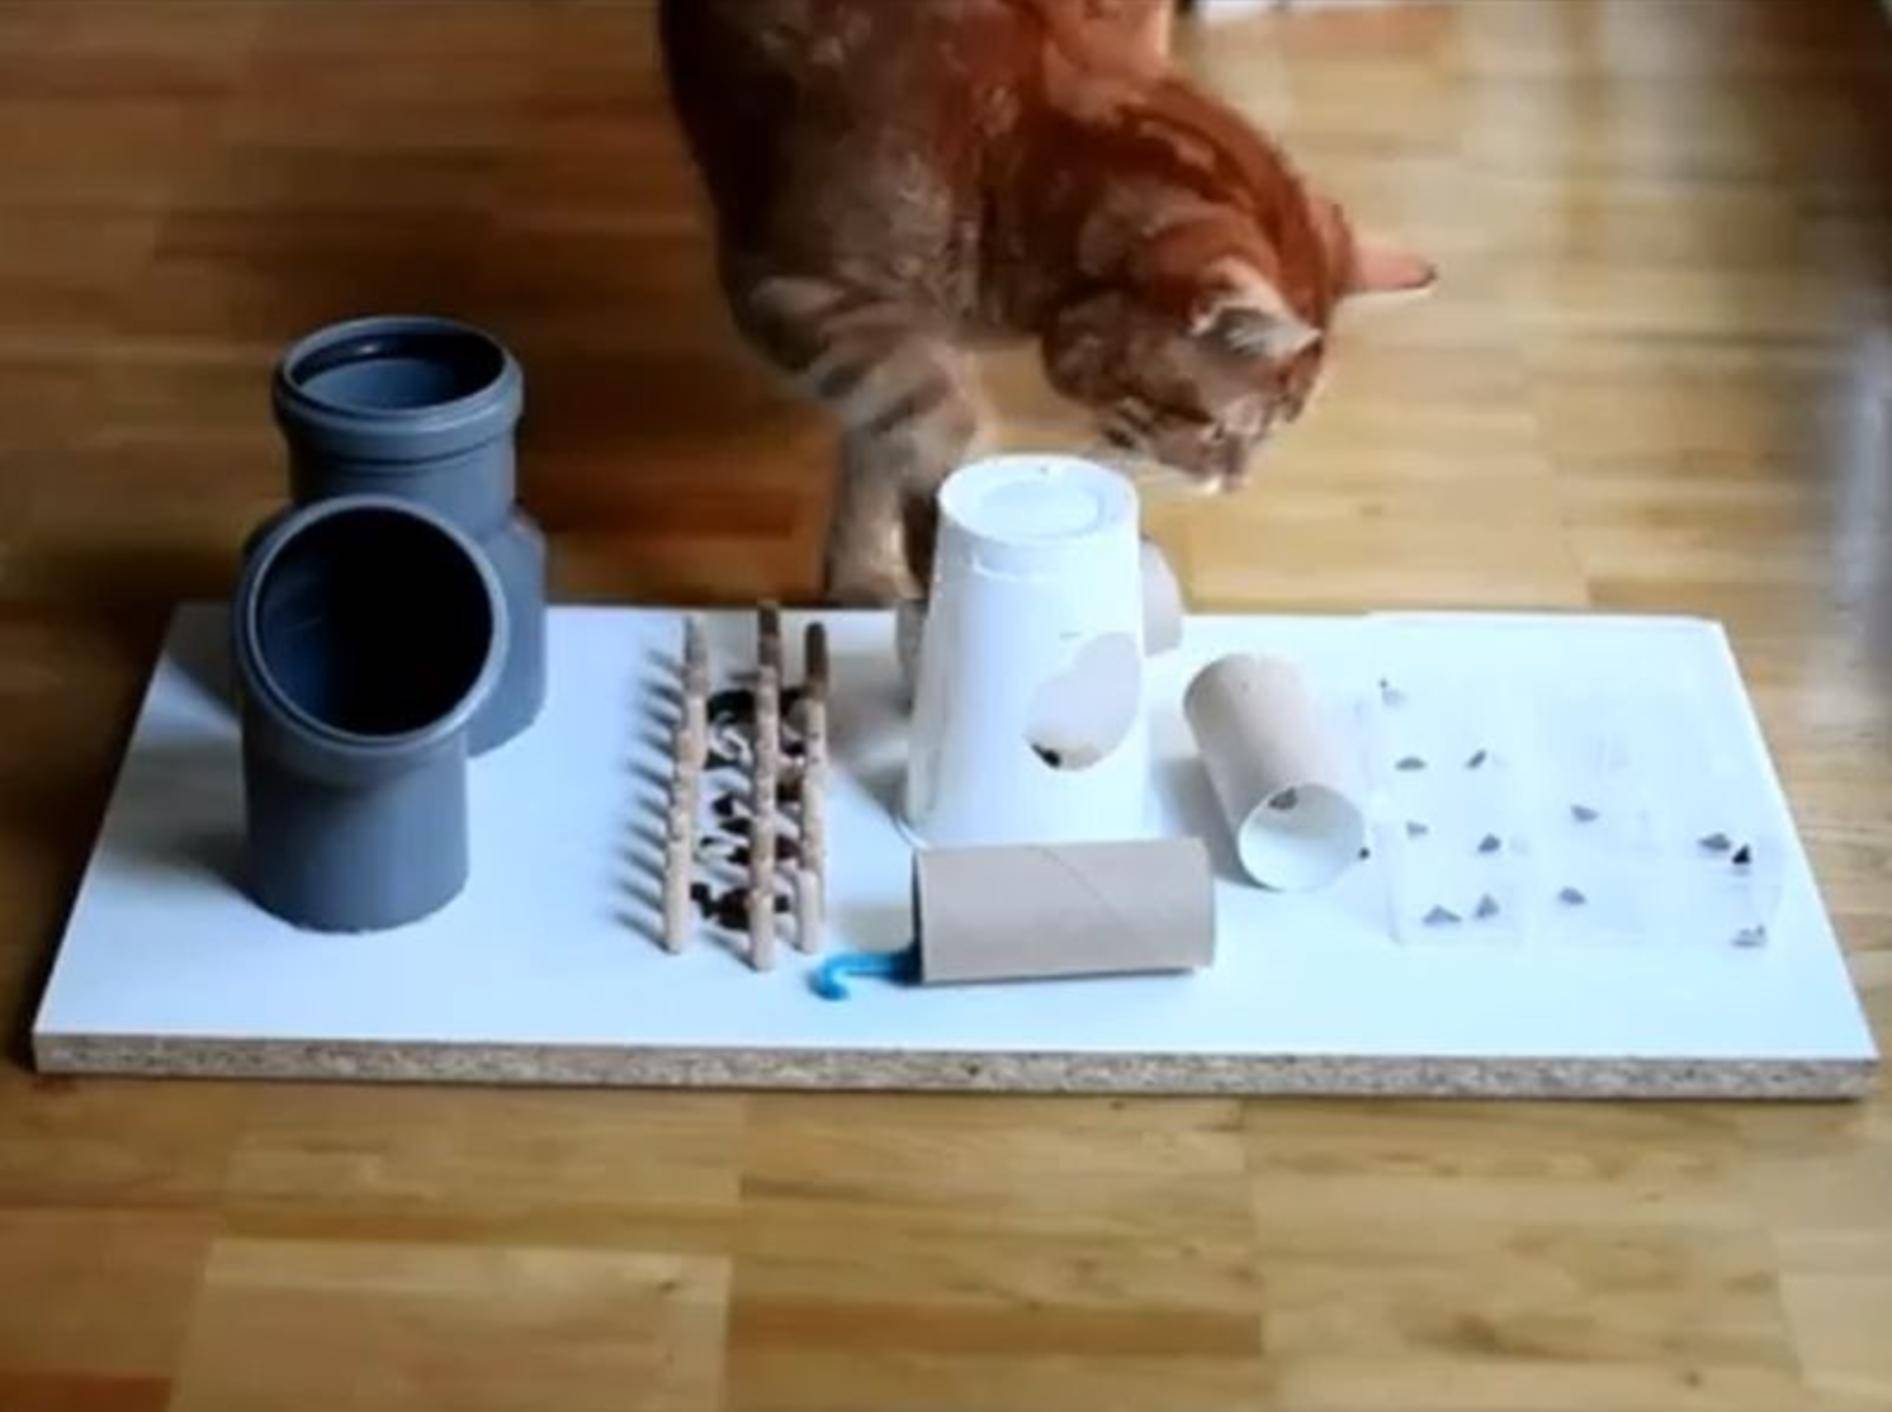 Hochkonzentriert: Eine Katze mit ihrem Fummelbrett – Youtube / leoflixi